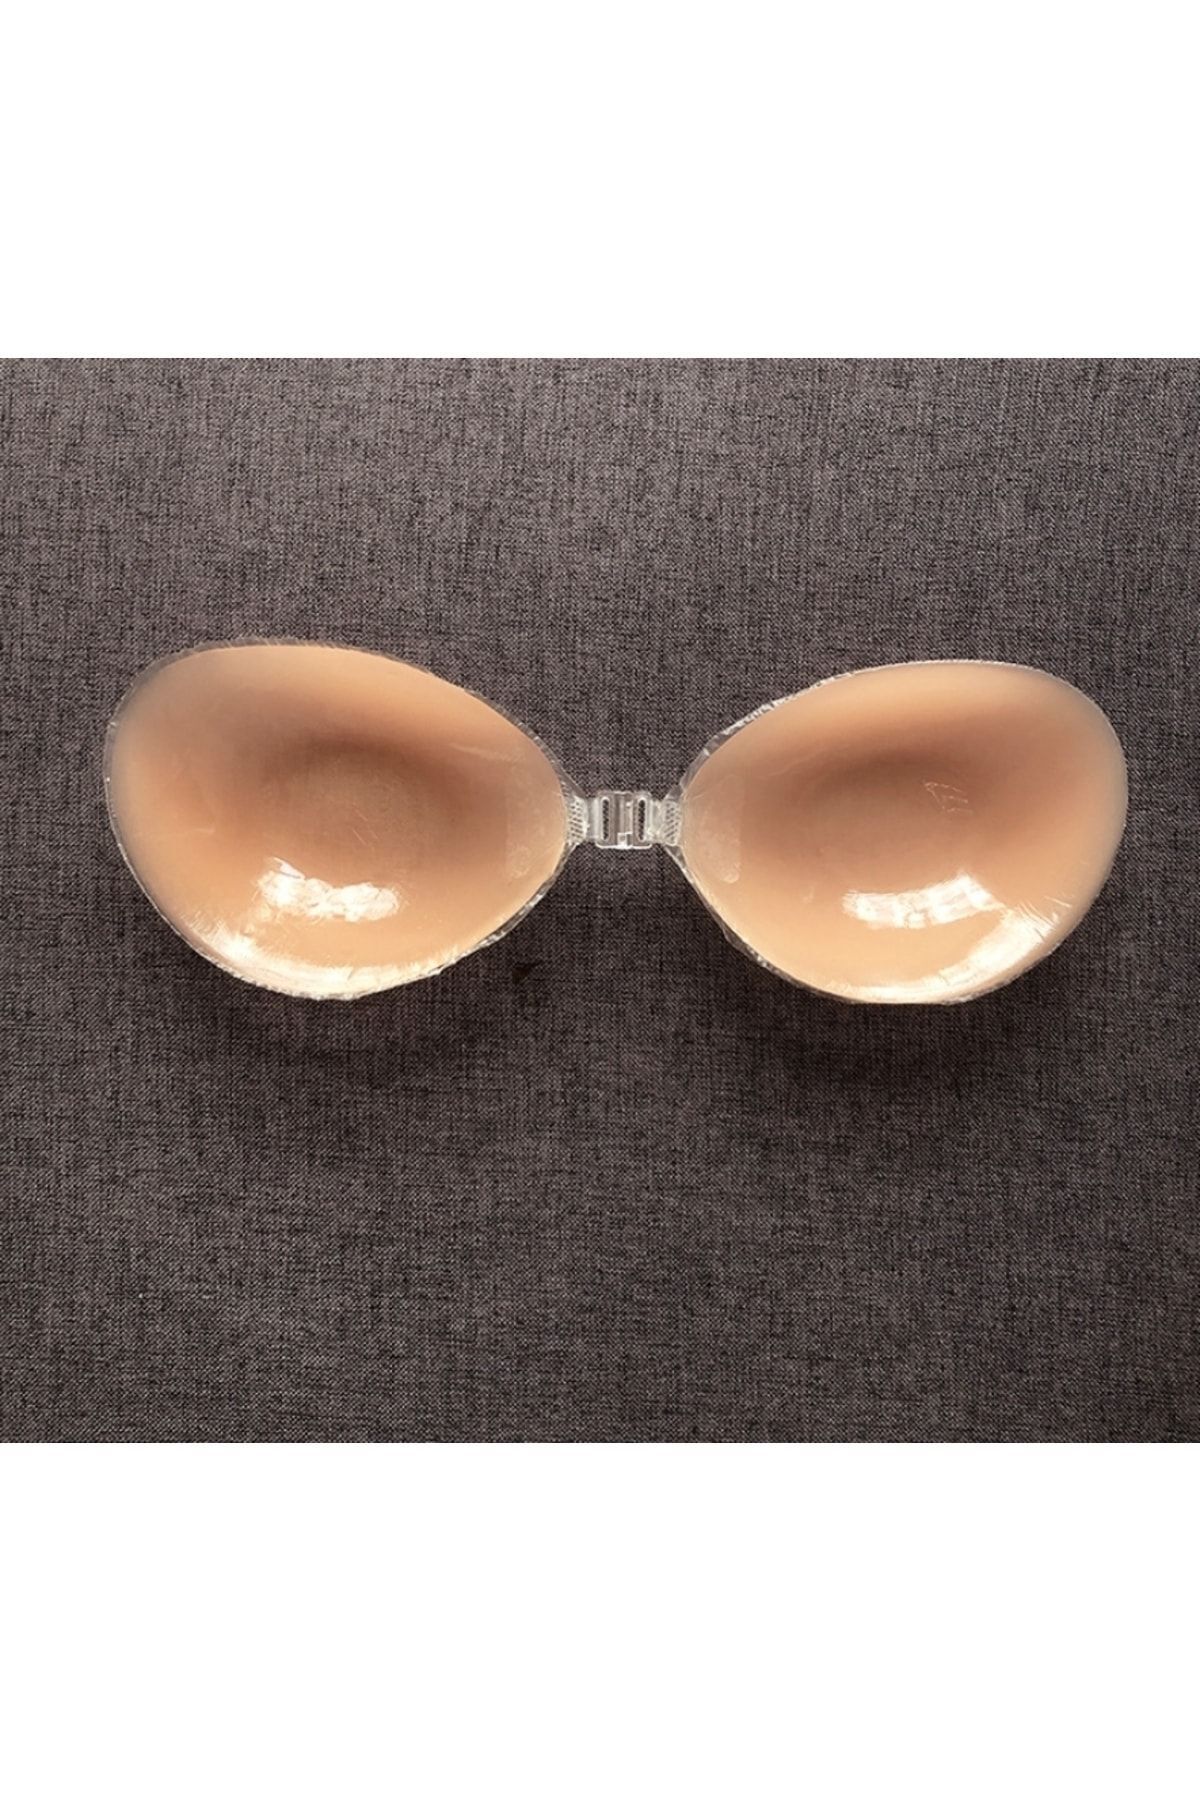 MOR SALKIM HOME Dekolte Kıyafet Göğüs Silikon Sütyen Kaldırma Bantlı Kendinden Yapışkanlı (s Beden Et Sütyen)